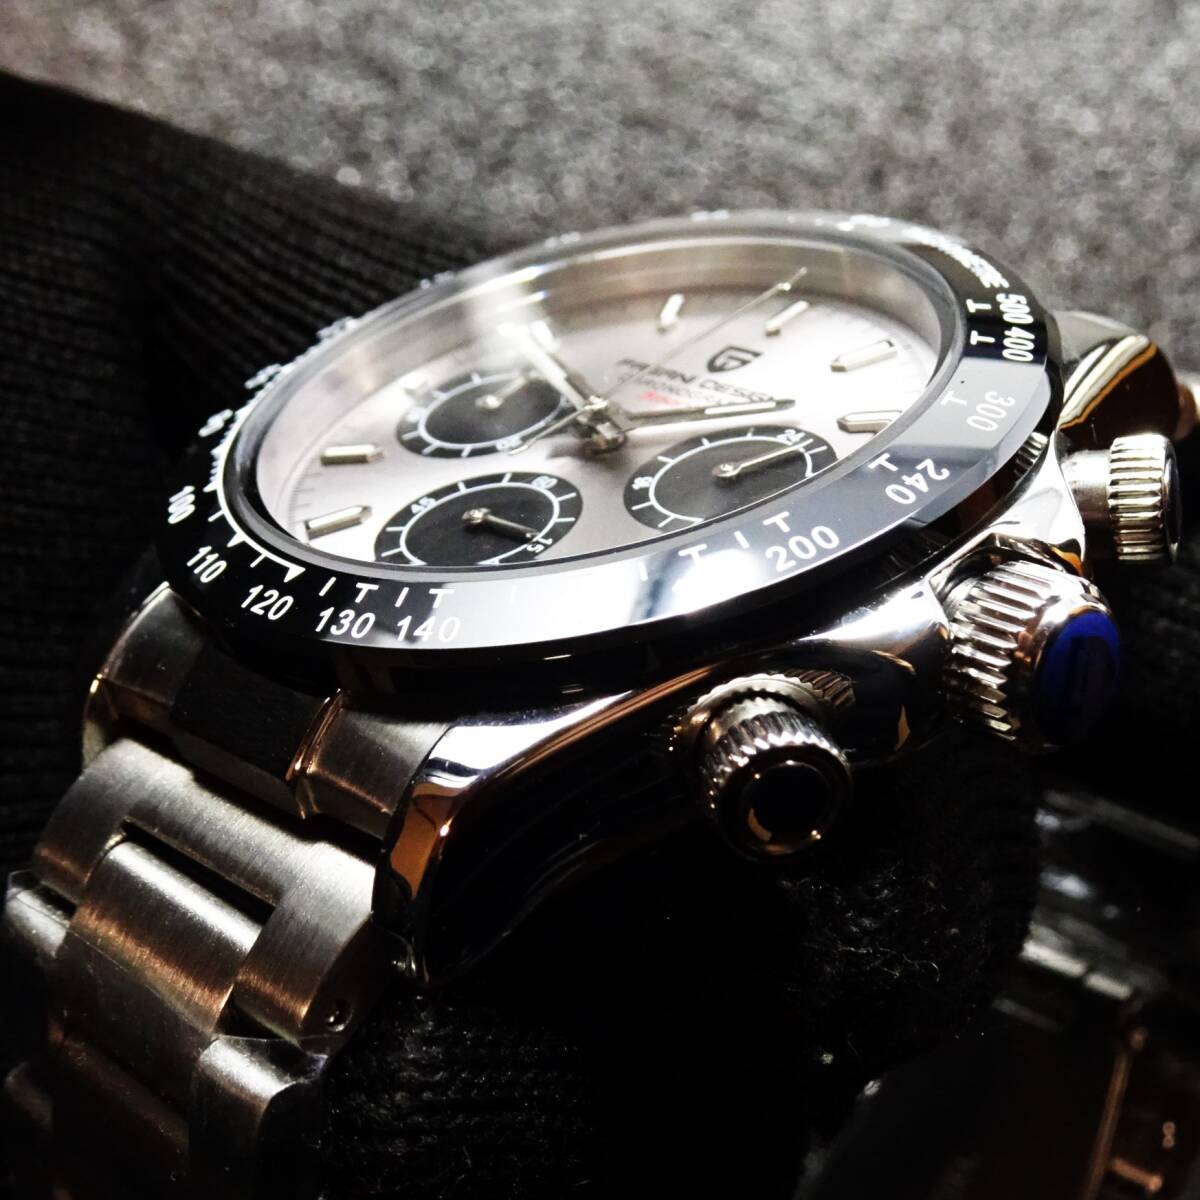 送料無料・新品・パガーニデザイン・メンズ・セイコー製VK63クロノグラフクオーツ式腕時計・フルメタル・オマージュウオッチ・PD-1664_画像2